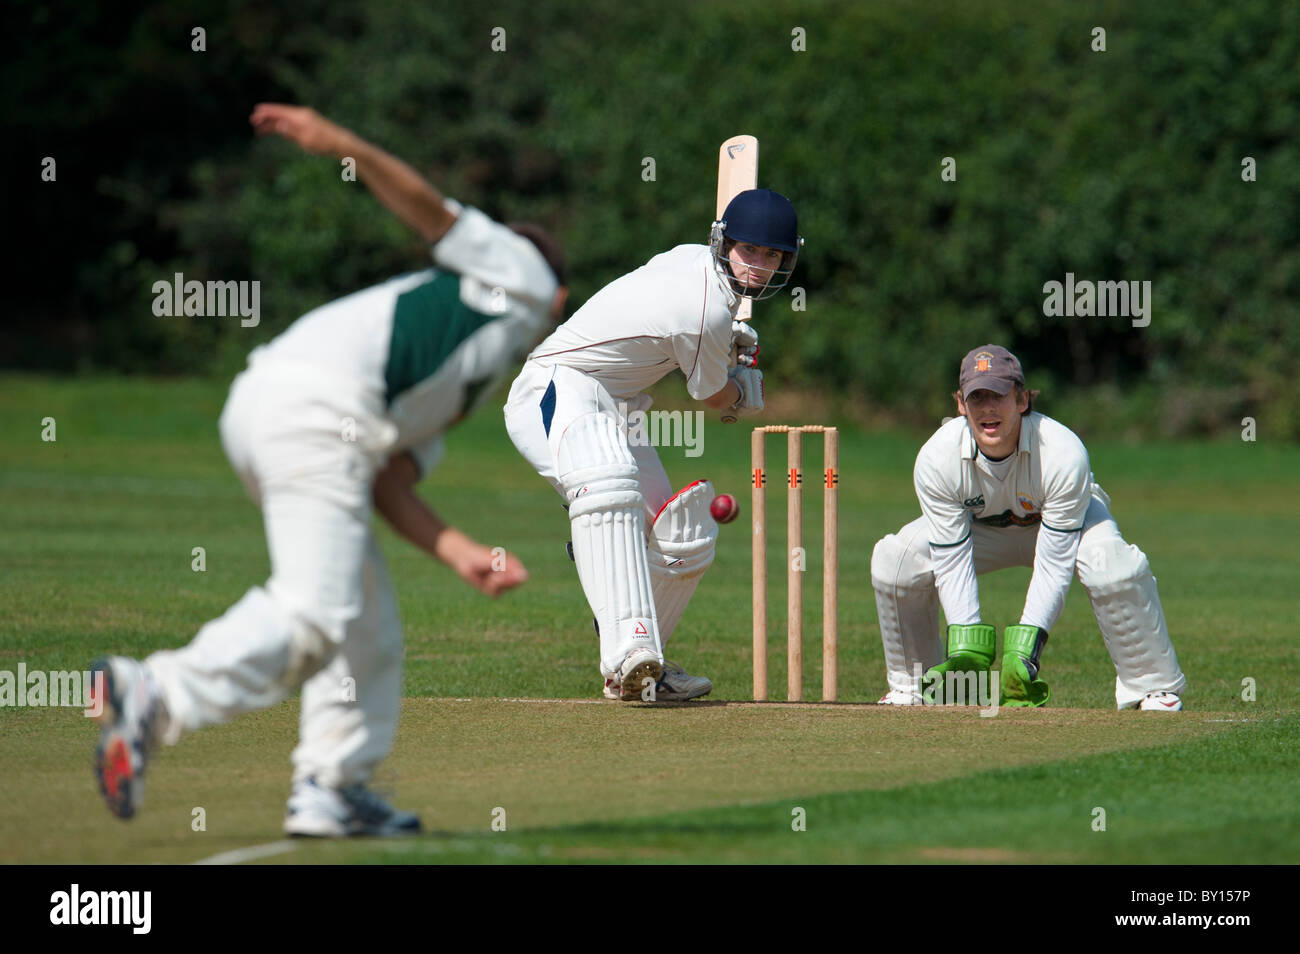 Samedi, 28 août 2010. Match de cricket anglais, Bowler et batteur en action. Banque D'Images